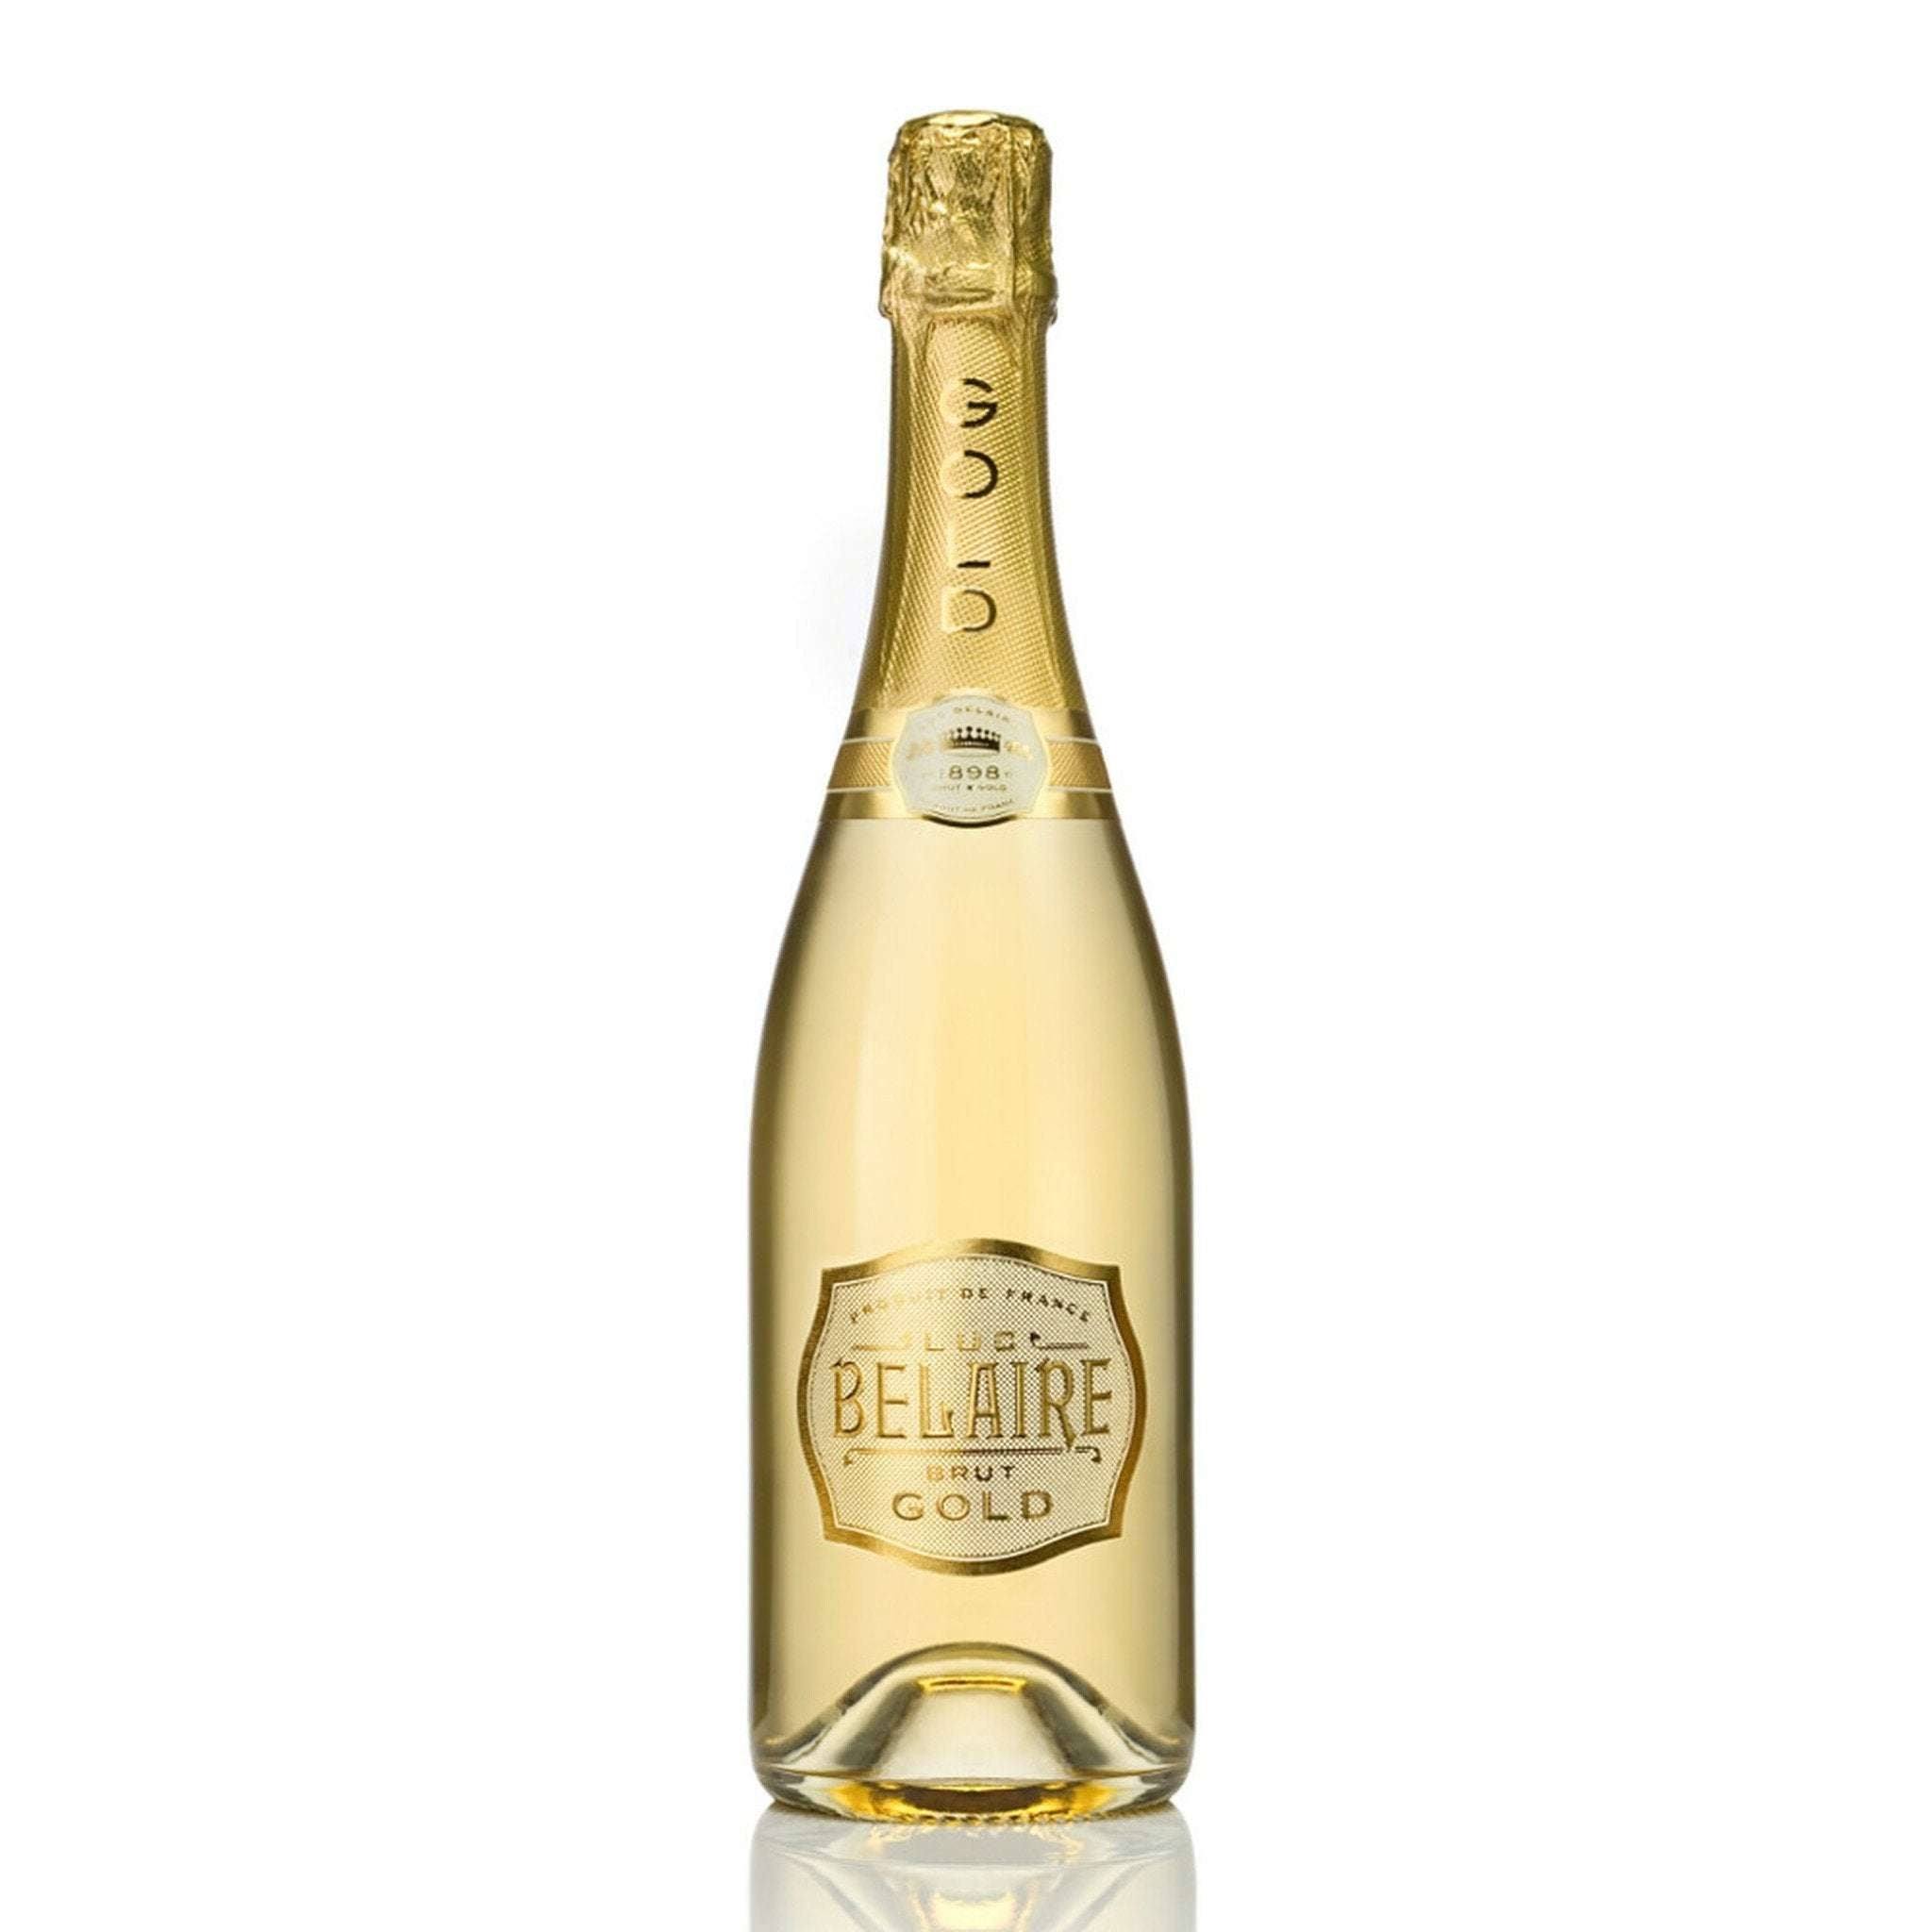 Luc Belaire Gold Sparkling Wine - Brut, France